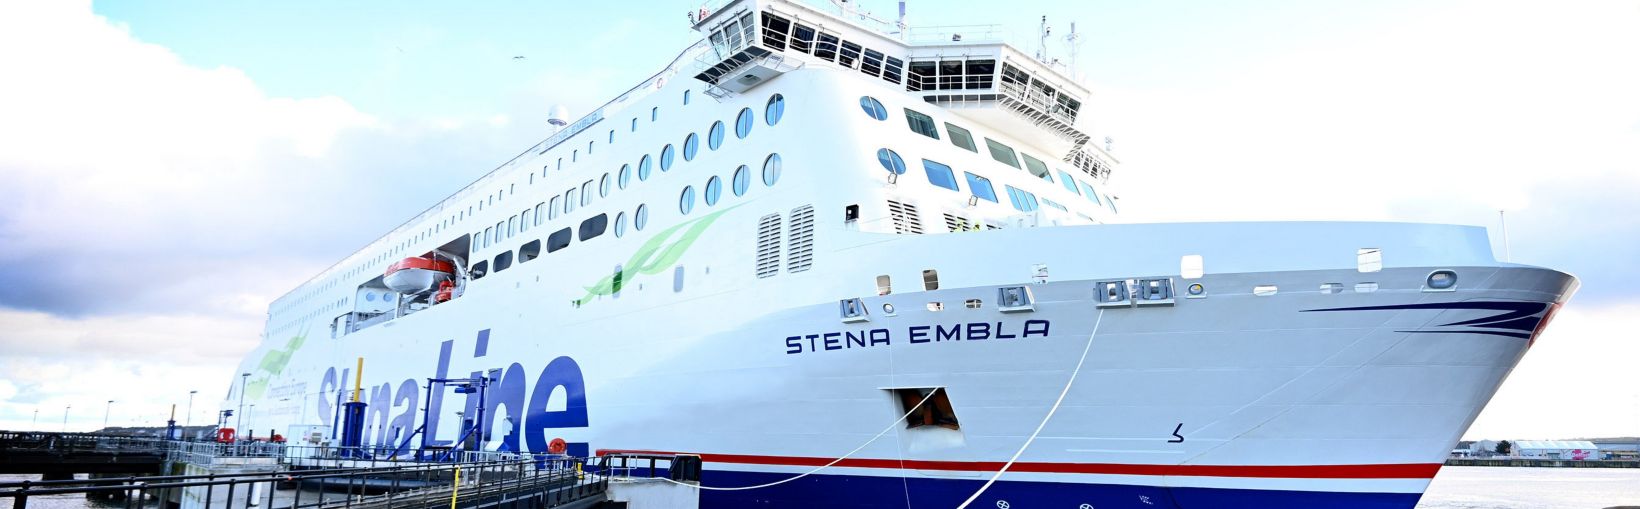 Nave Stena Embla attraccata al porto di Liverpool